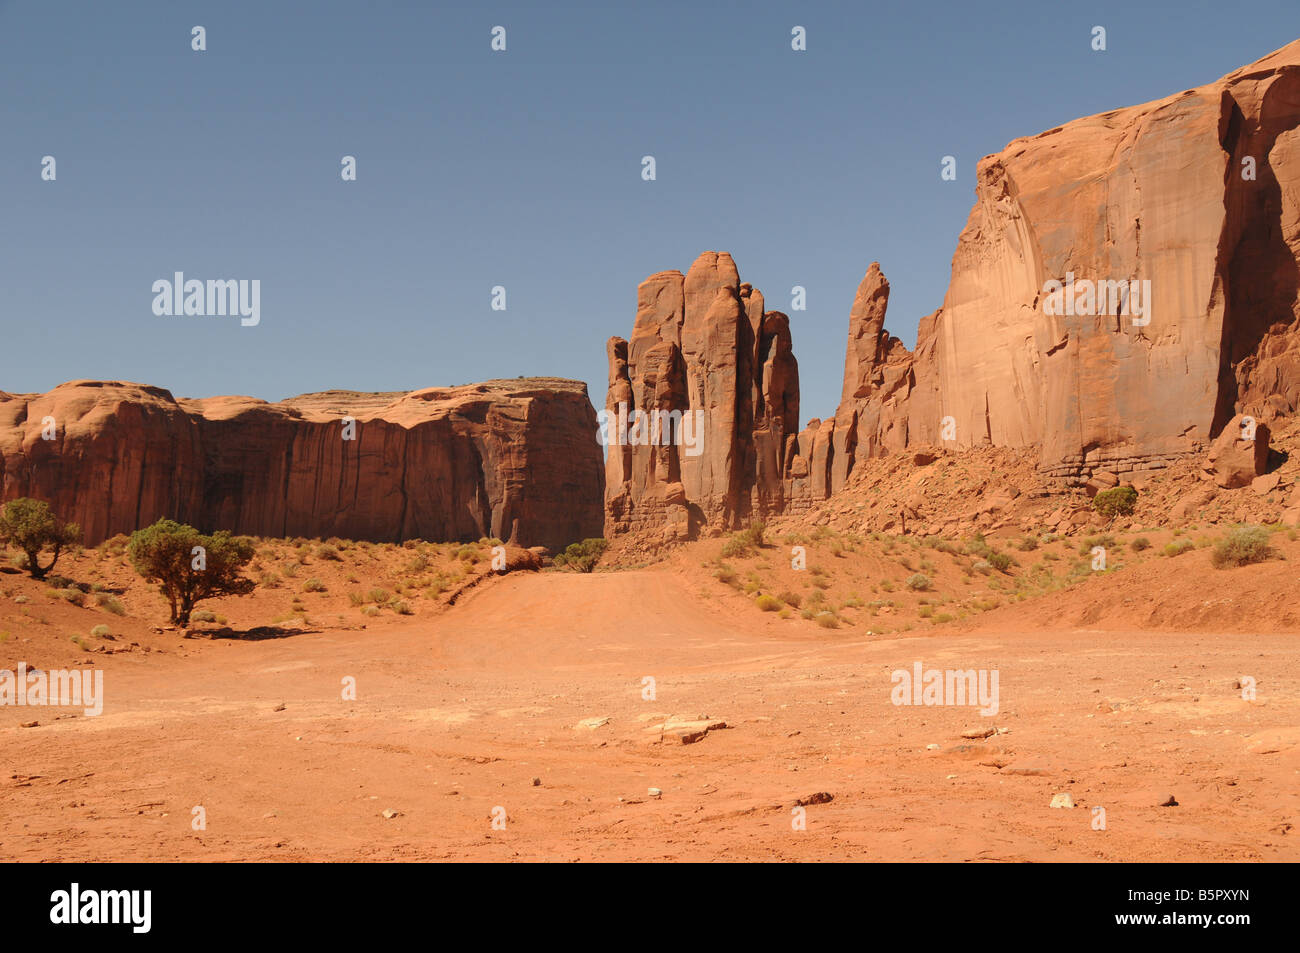 Un chemin de terre mène à travers le paysage distinct de Monument Valley, Arizona, USA. Banque D'Images